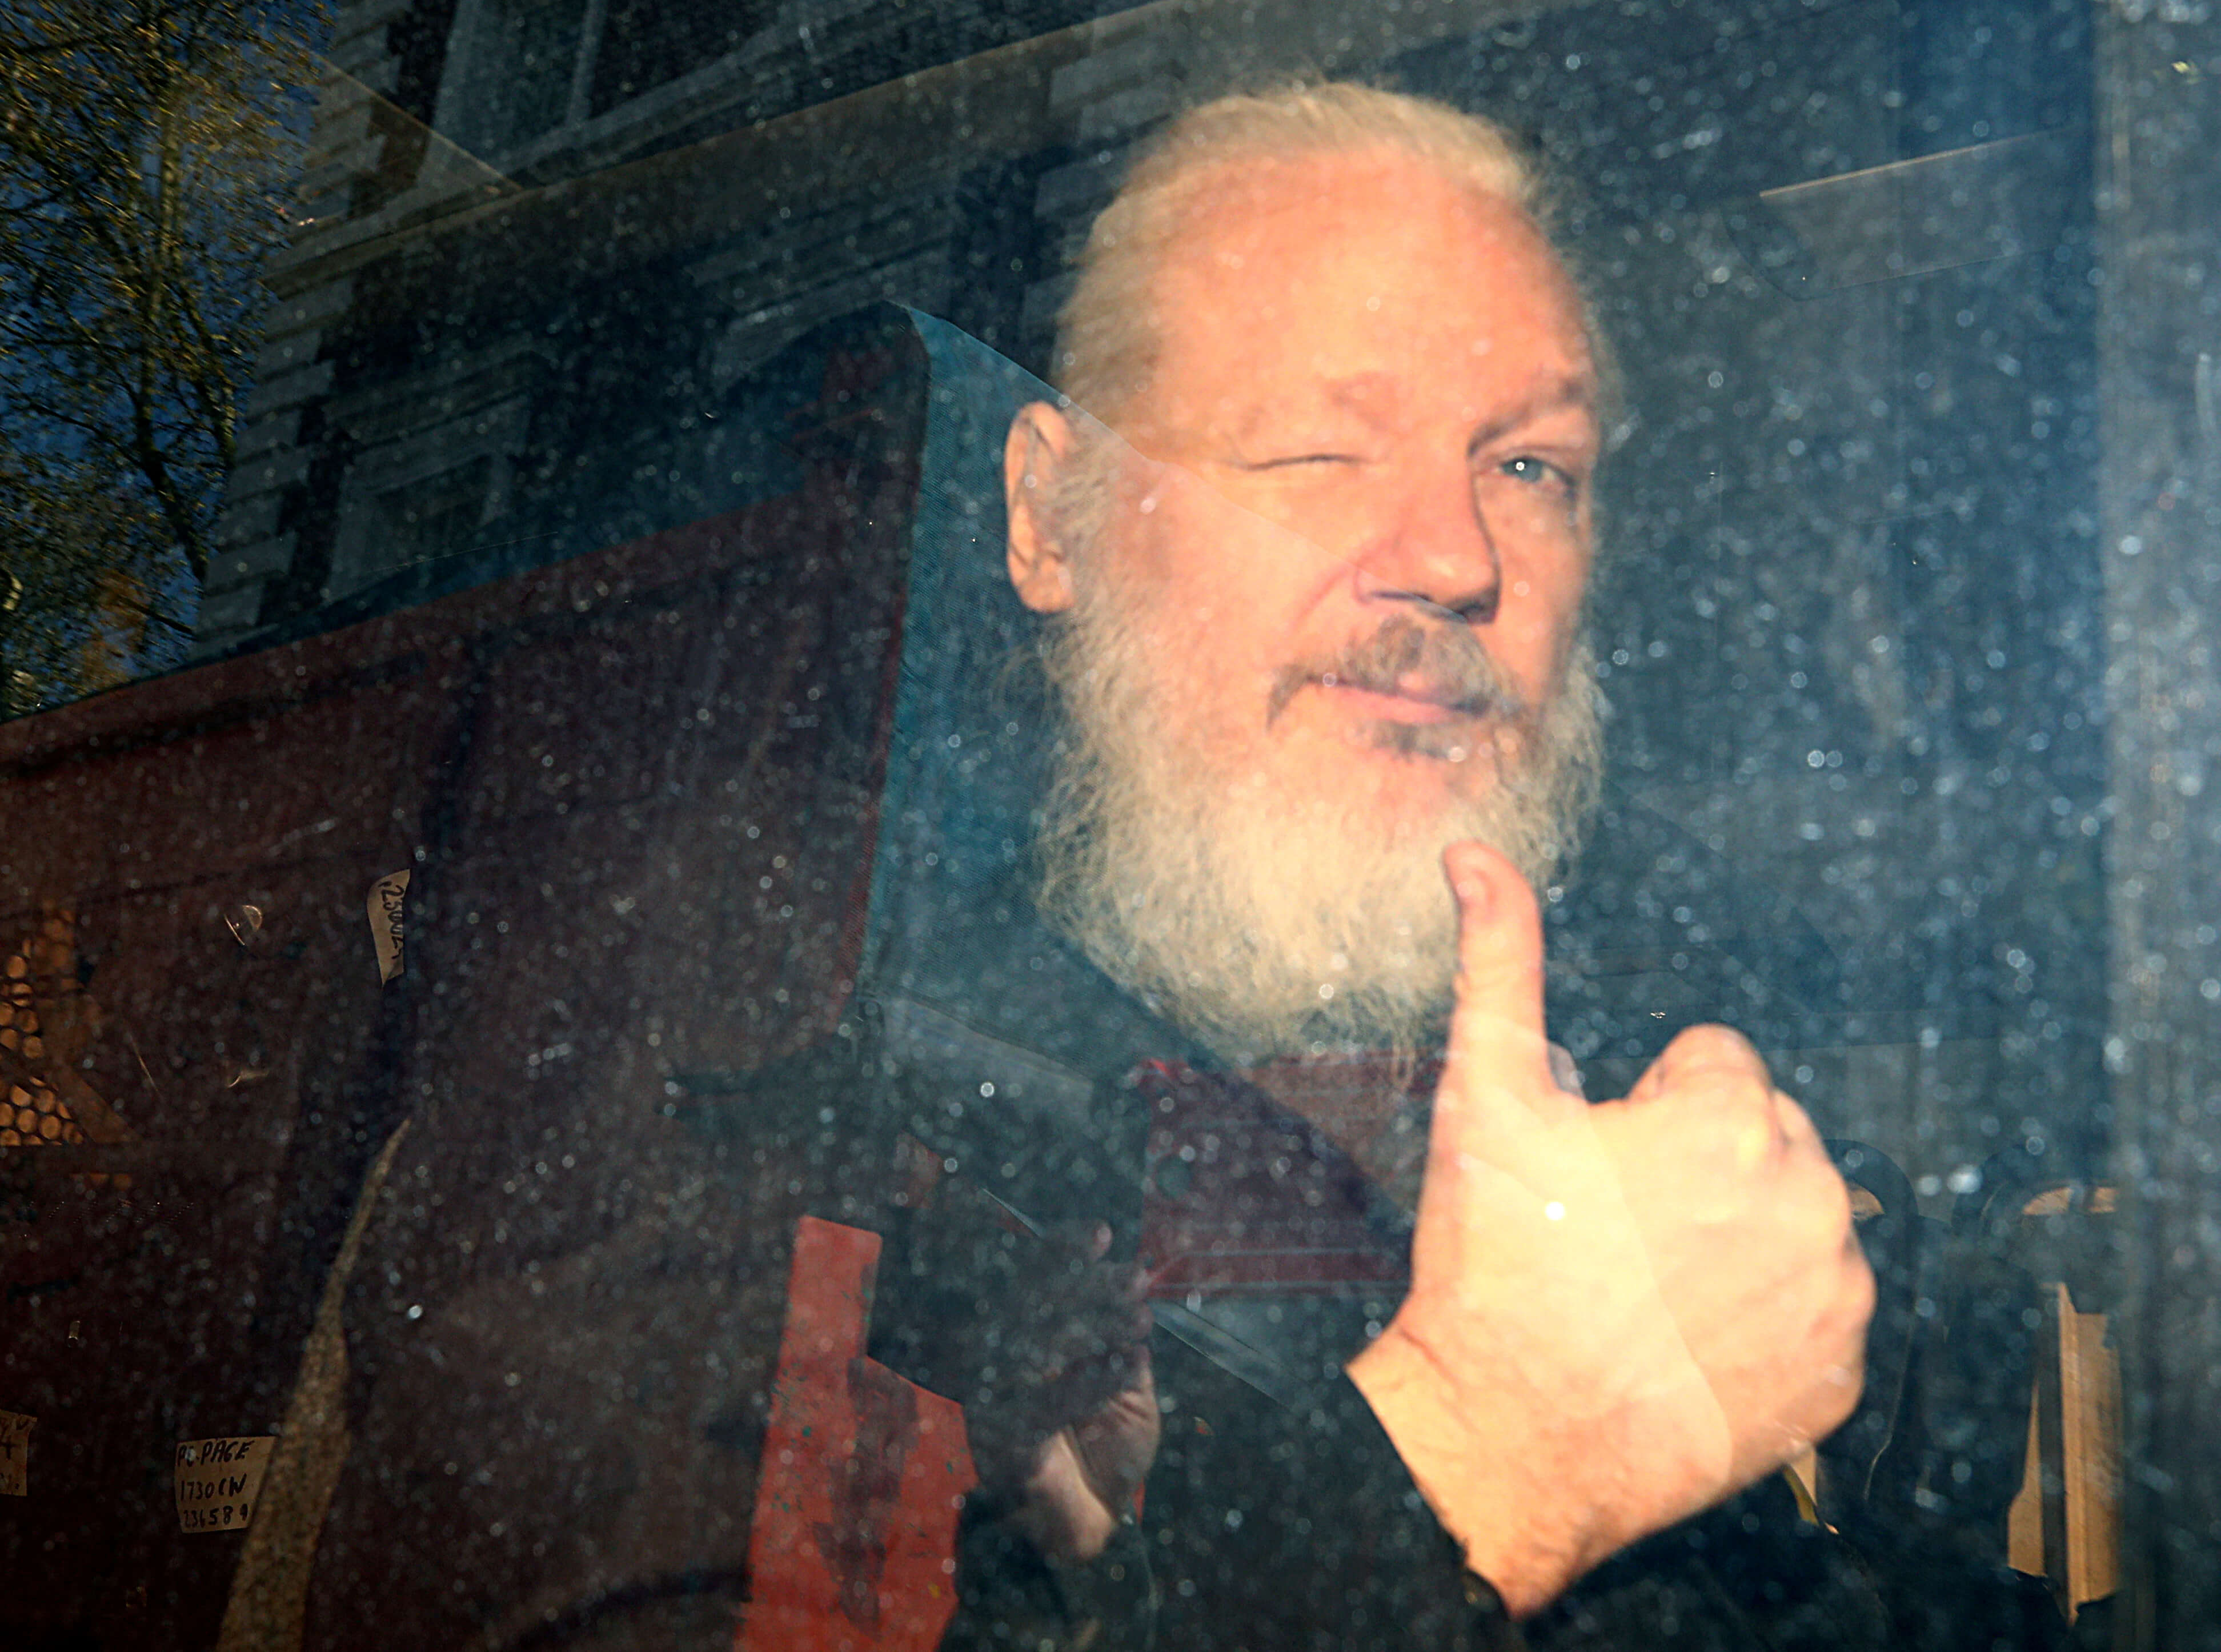 Foto: Julian Assange, fundador de WikiLeaks, llega a la Corte de Magistrados de Westminster, luego de ser arrestado en Londres, Reino Unido. El 11 de abril de 2019